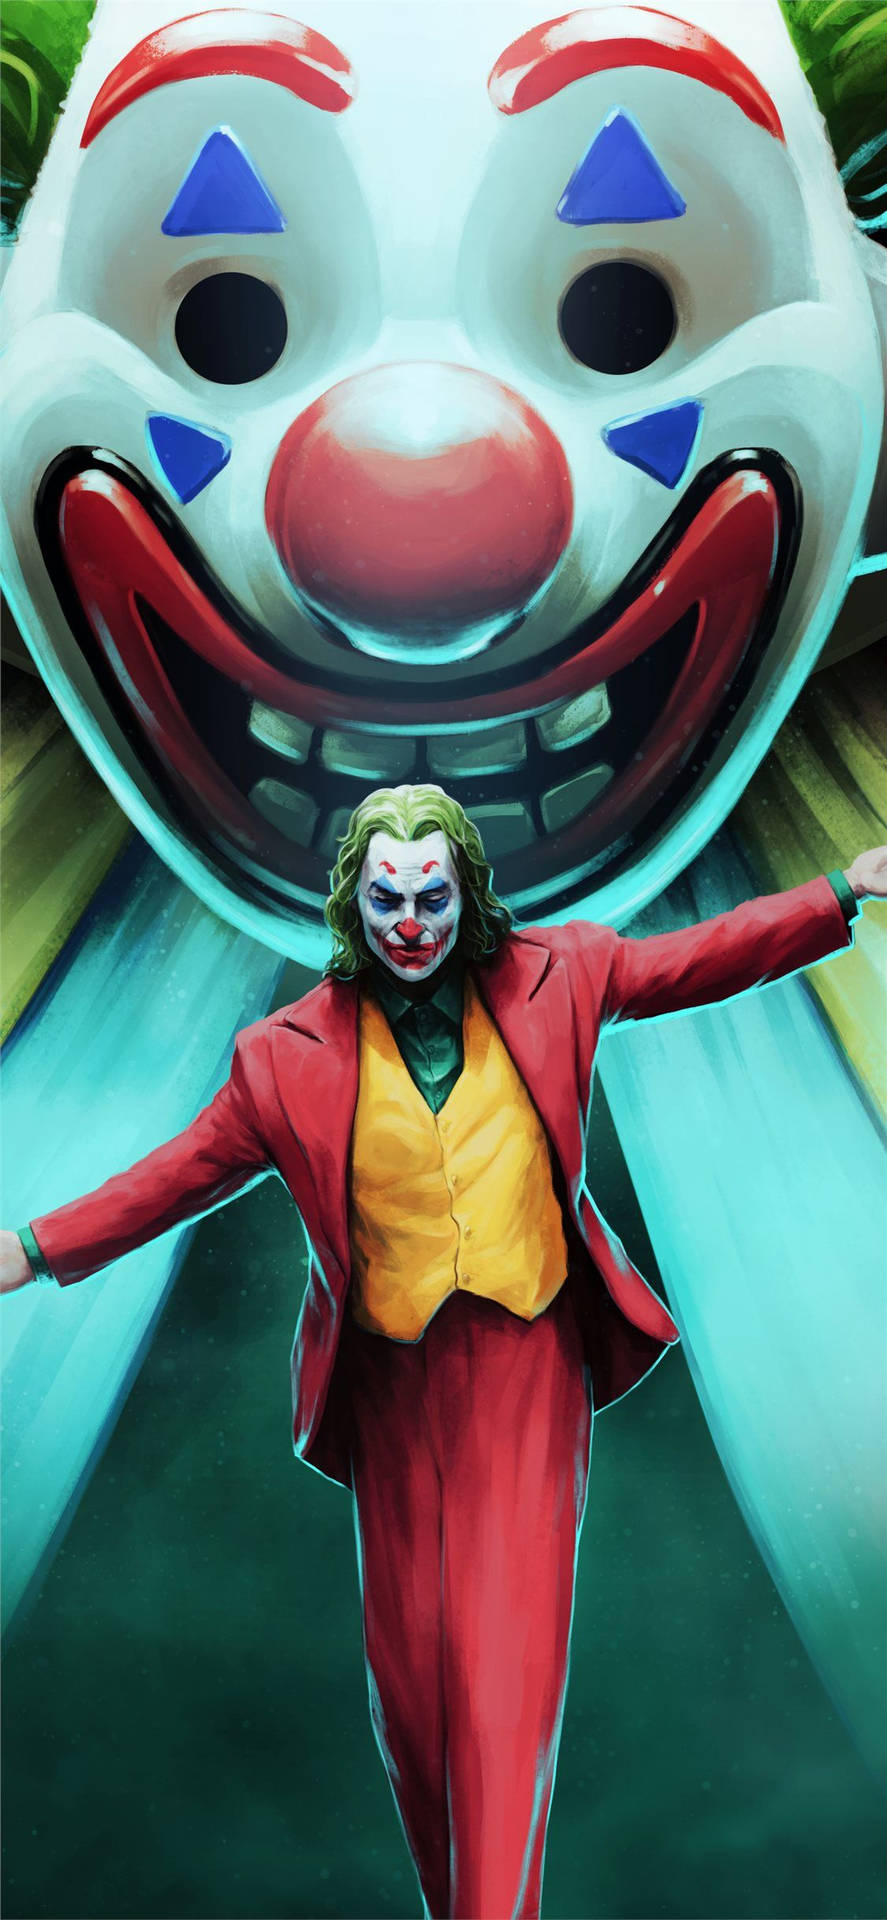 Joker 2019 Movie Art